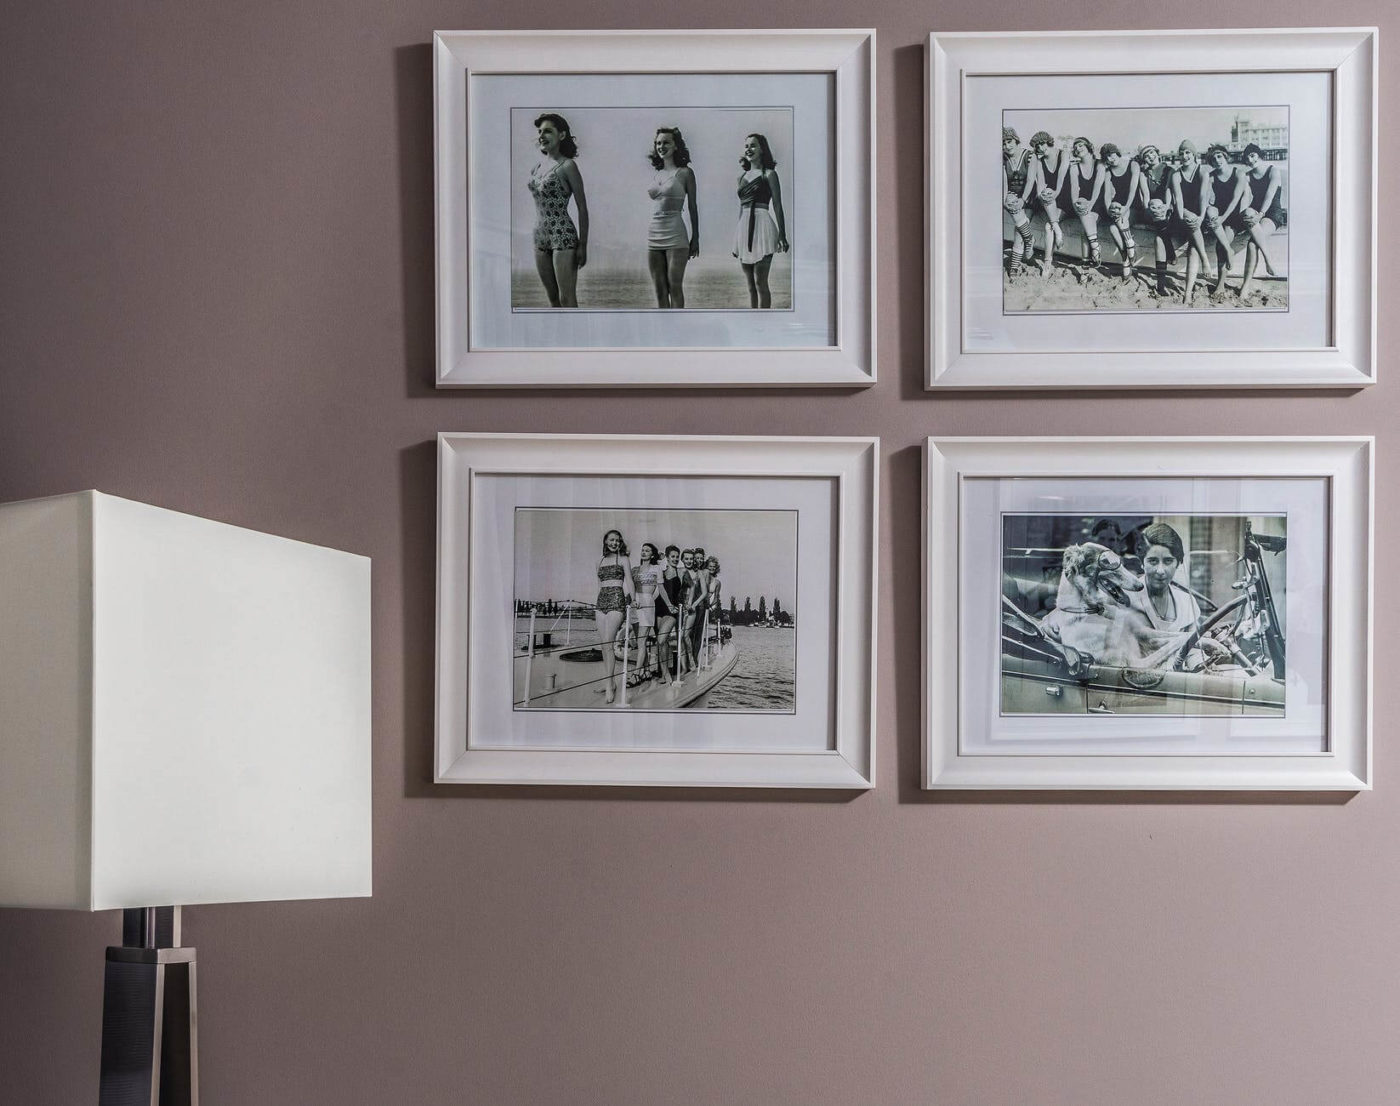 Four framed photographs on the wall